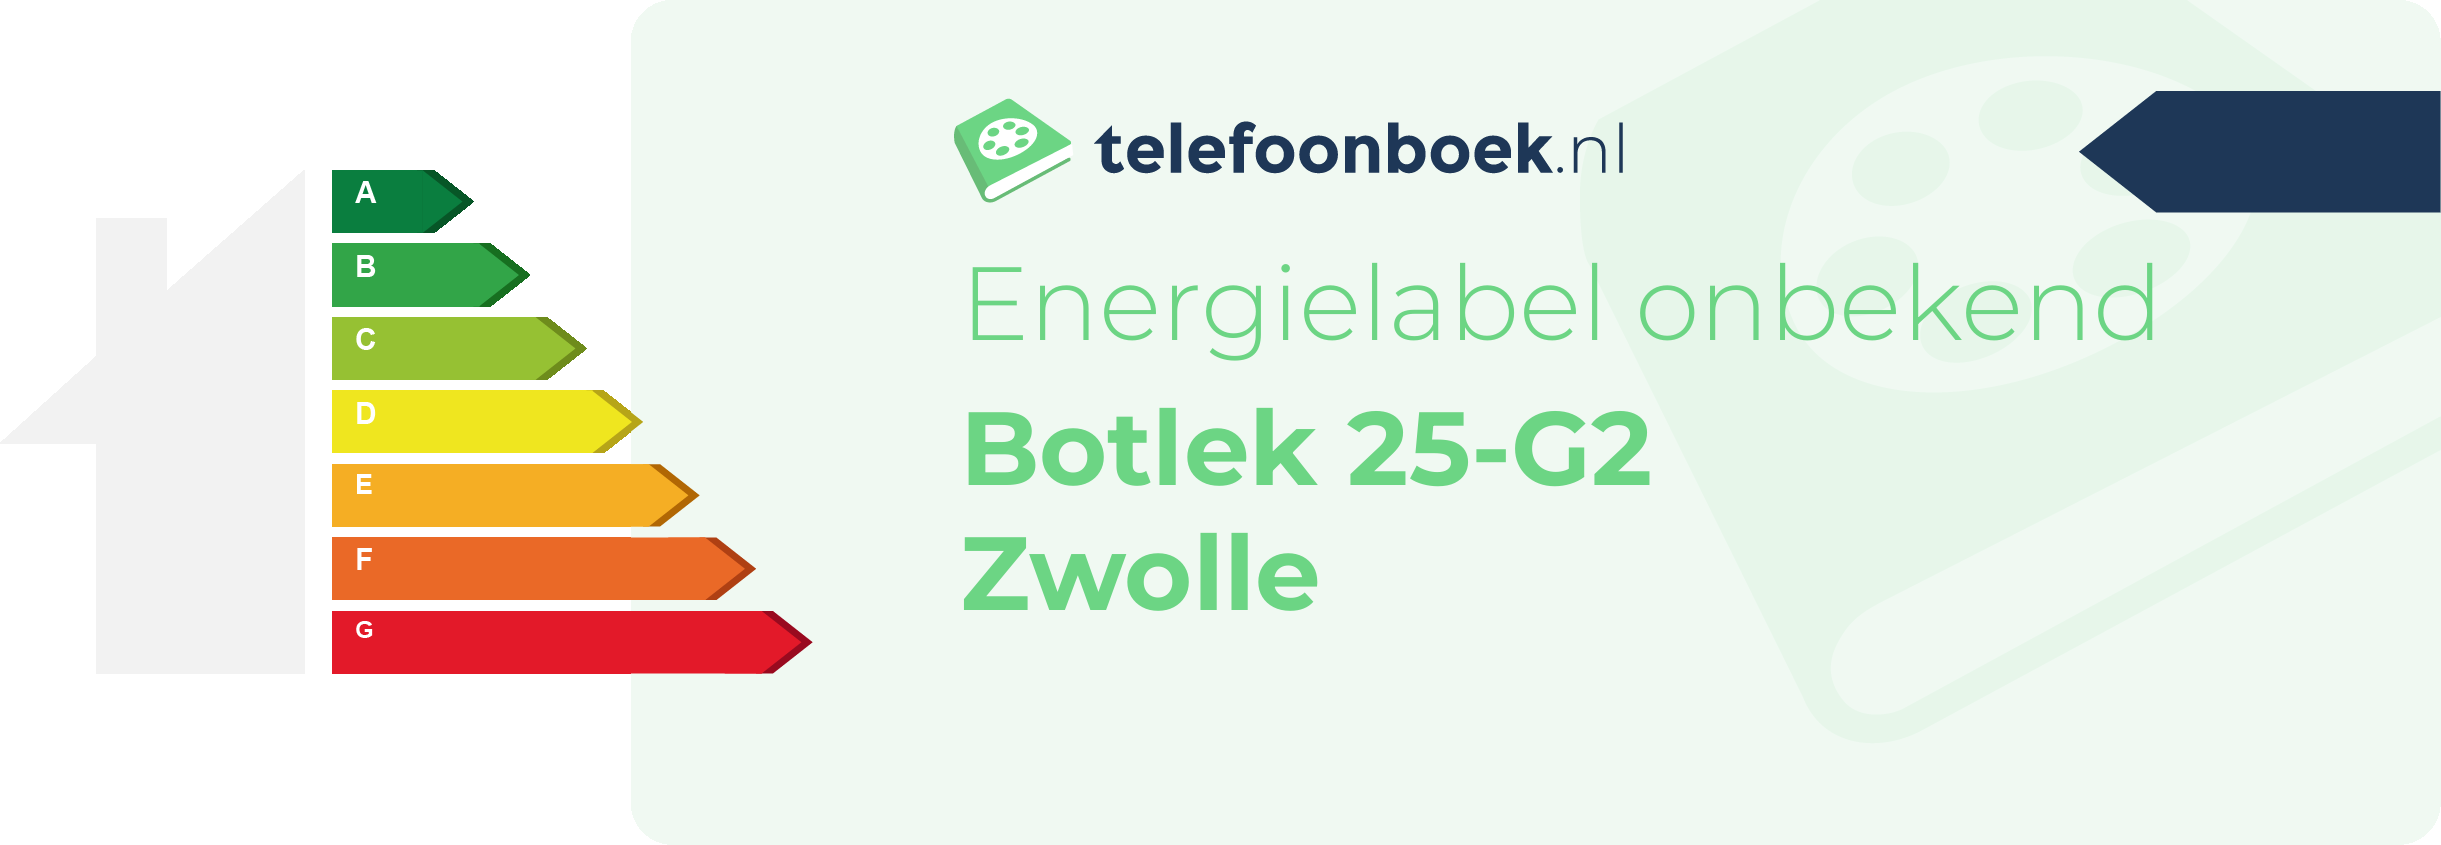 Energielabel Botlek 25-G2 Zwolle